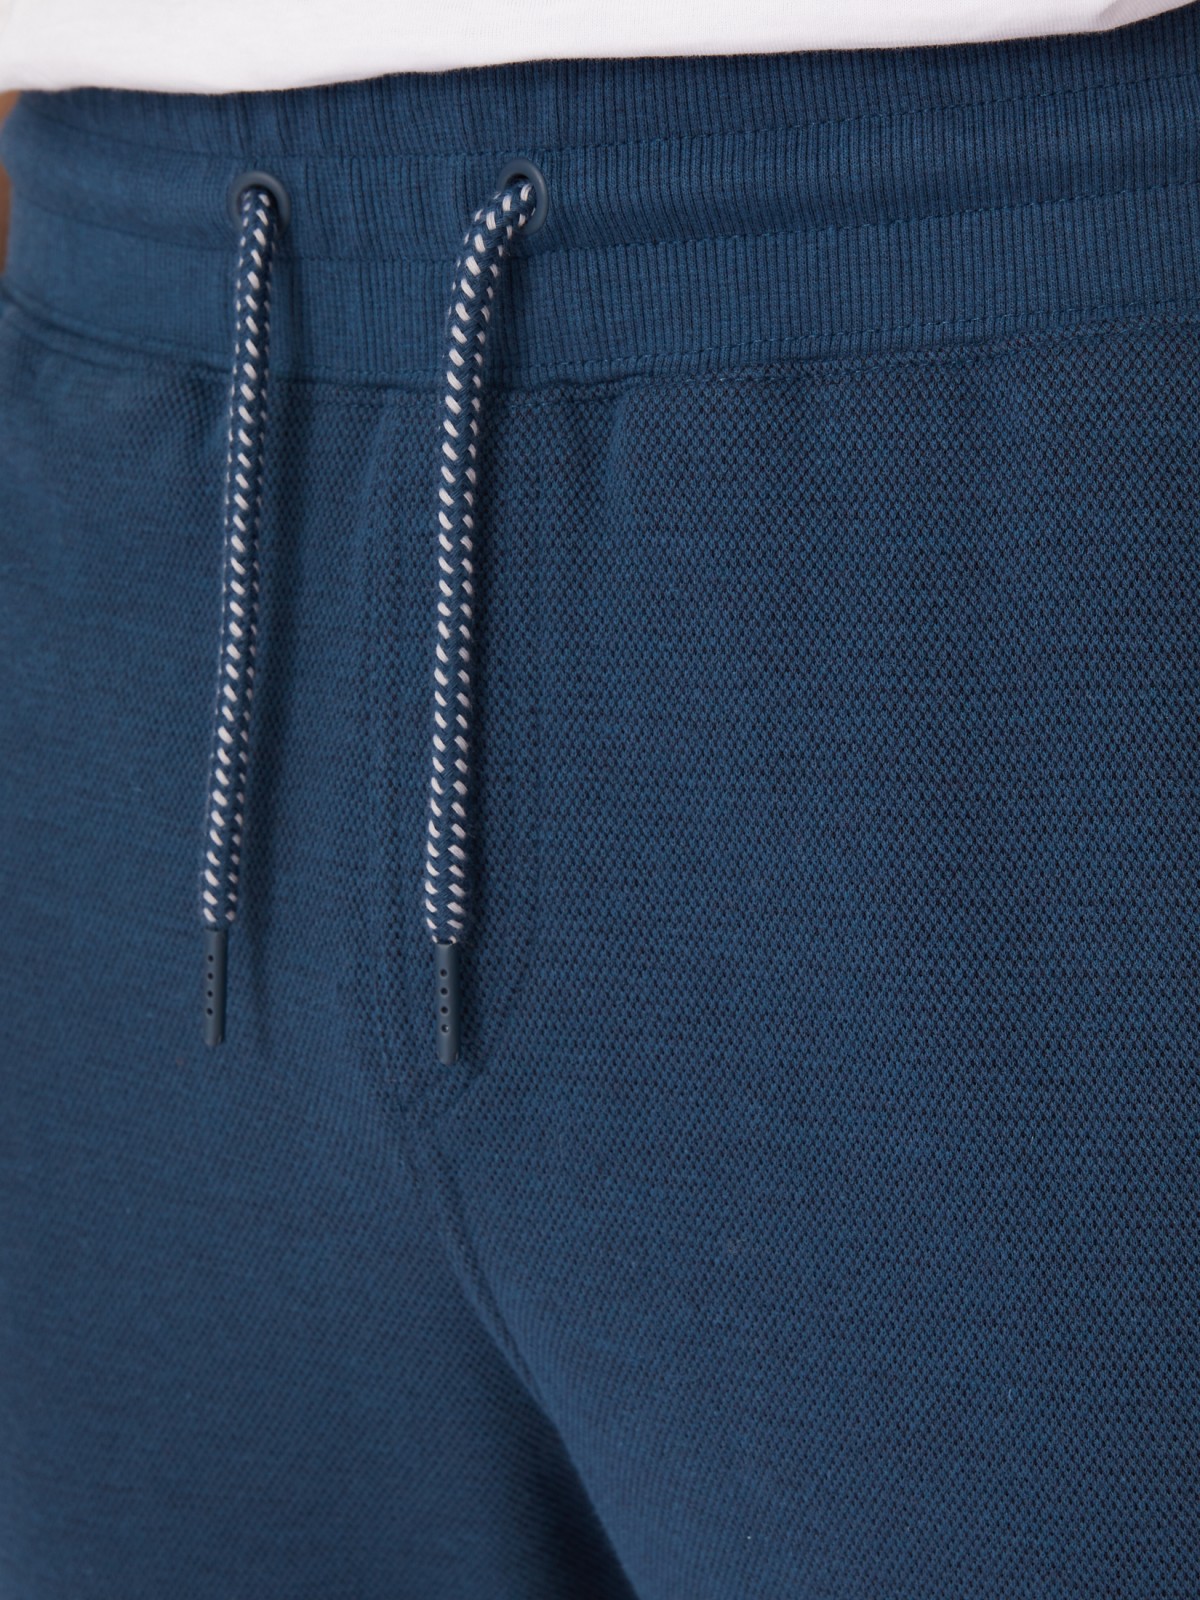 Трикотажные брюки-джоггеры в спортивном стиле zolla 21331762F012, цвет бирюзовый, размер S - фото 4